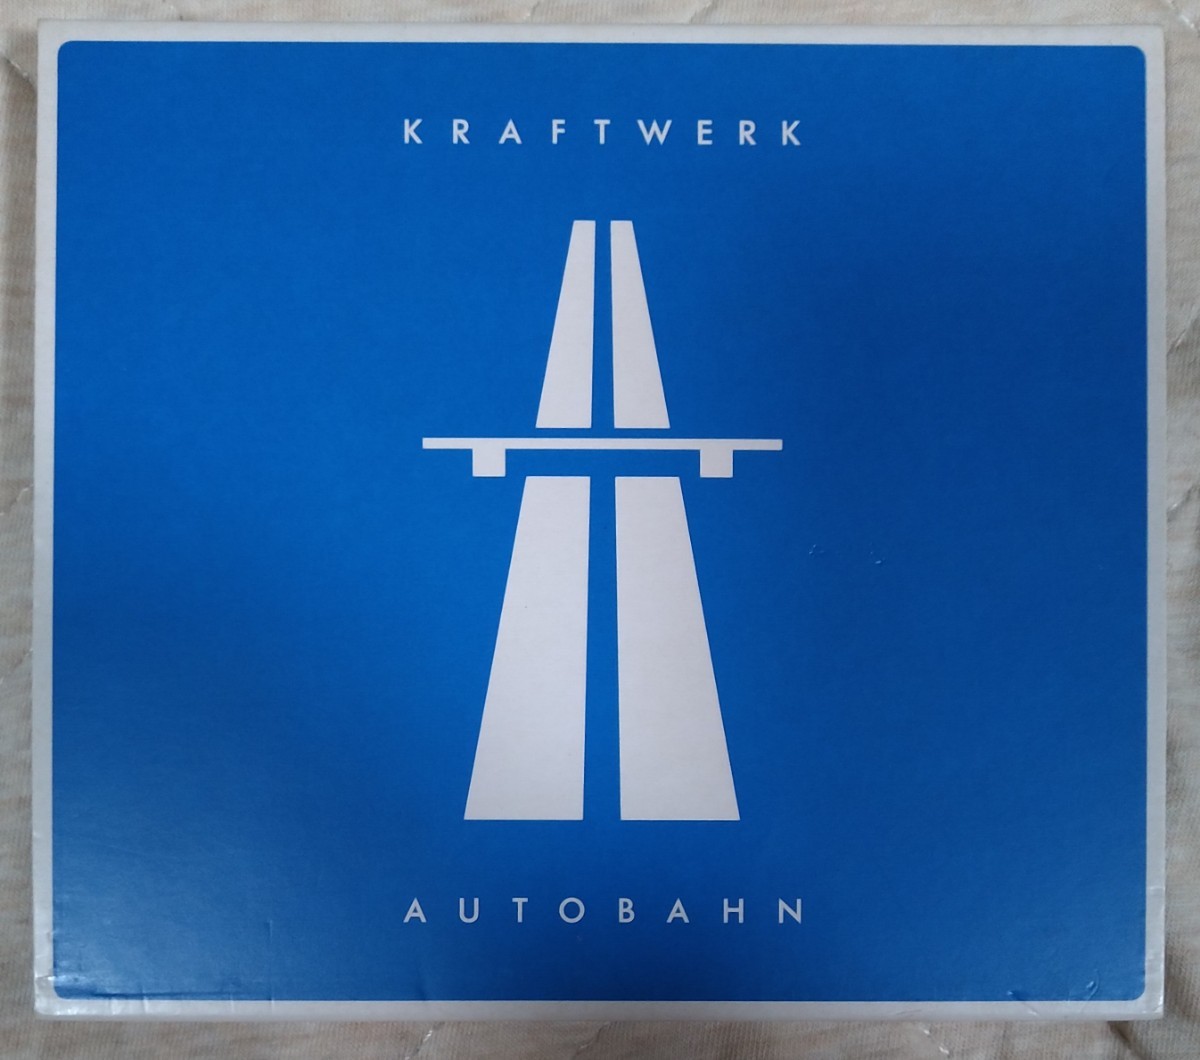 アウトバーン クラフトワーク 旧規格紙ケース付リマスター輸入盤中古CD KRAFTWERK autobahn 高速道路 大彗星 CDSTUMM303_画像1